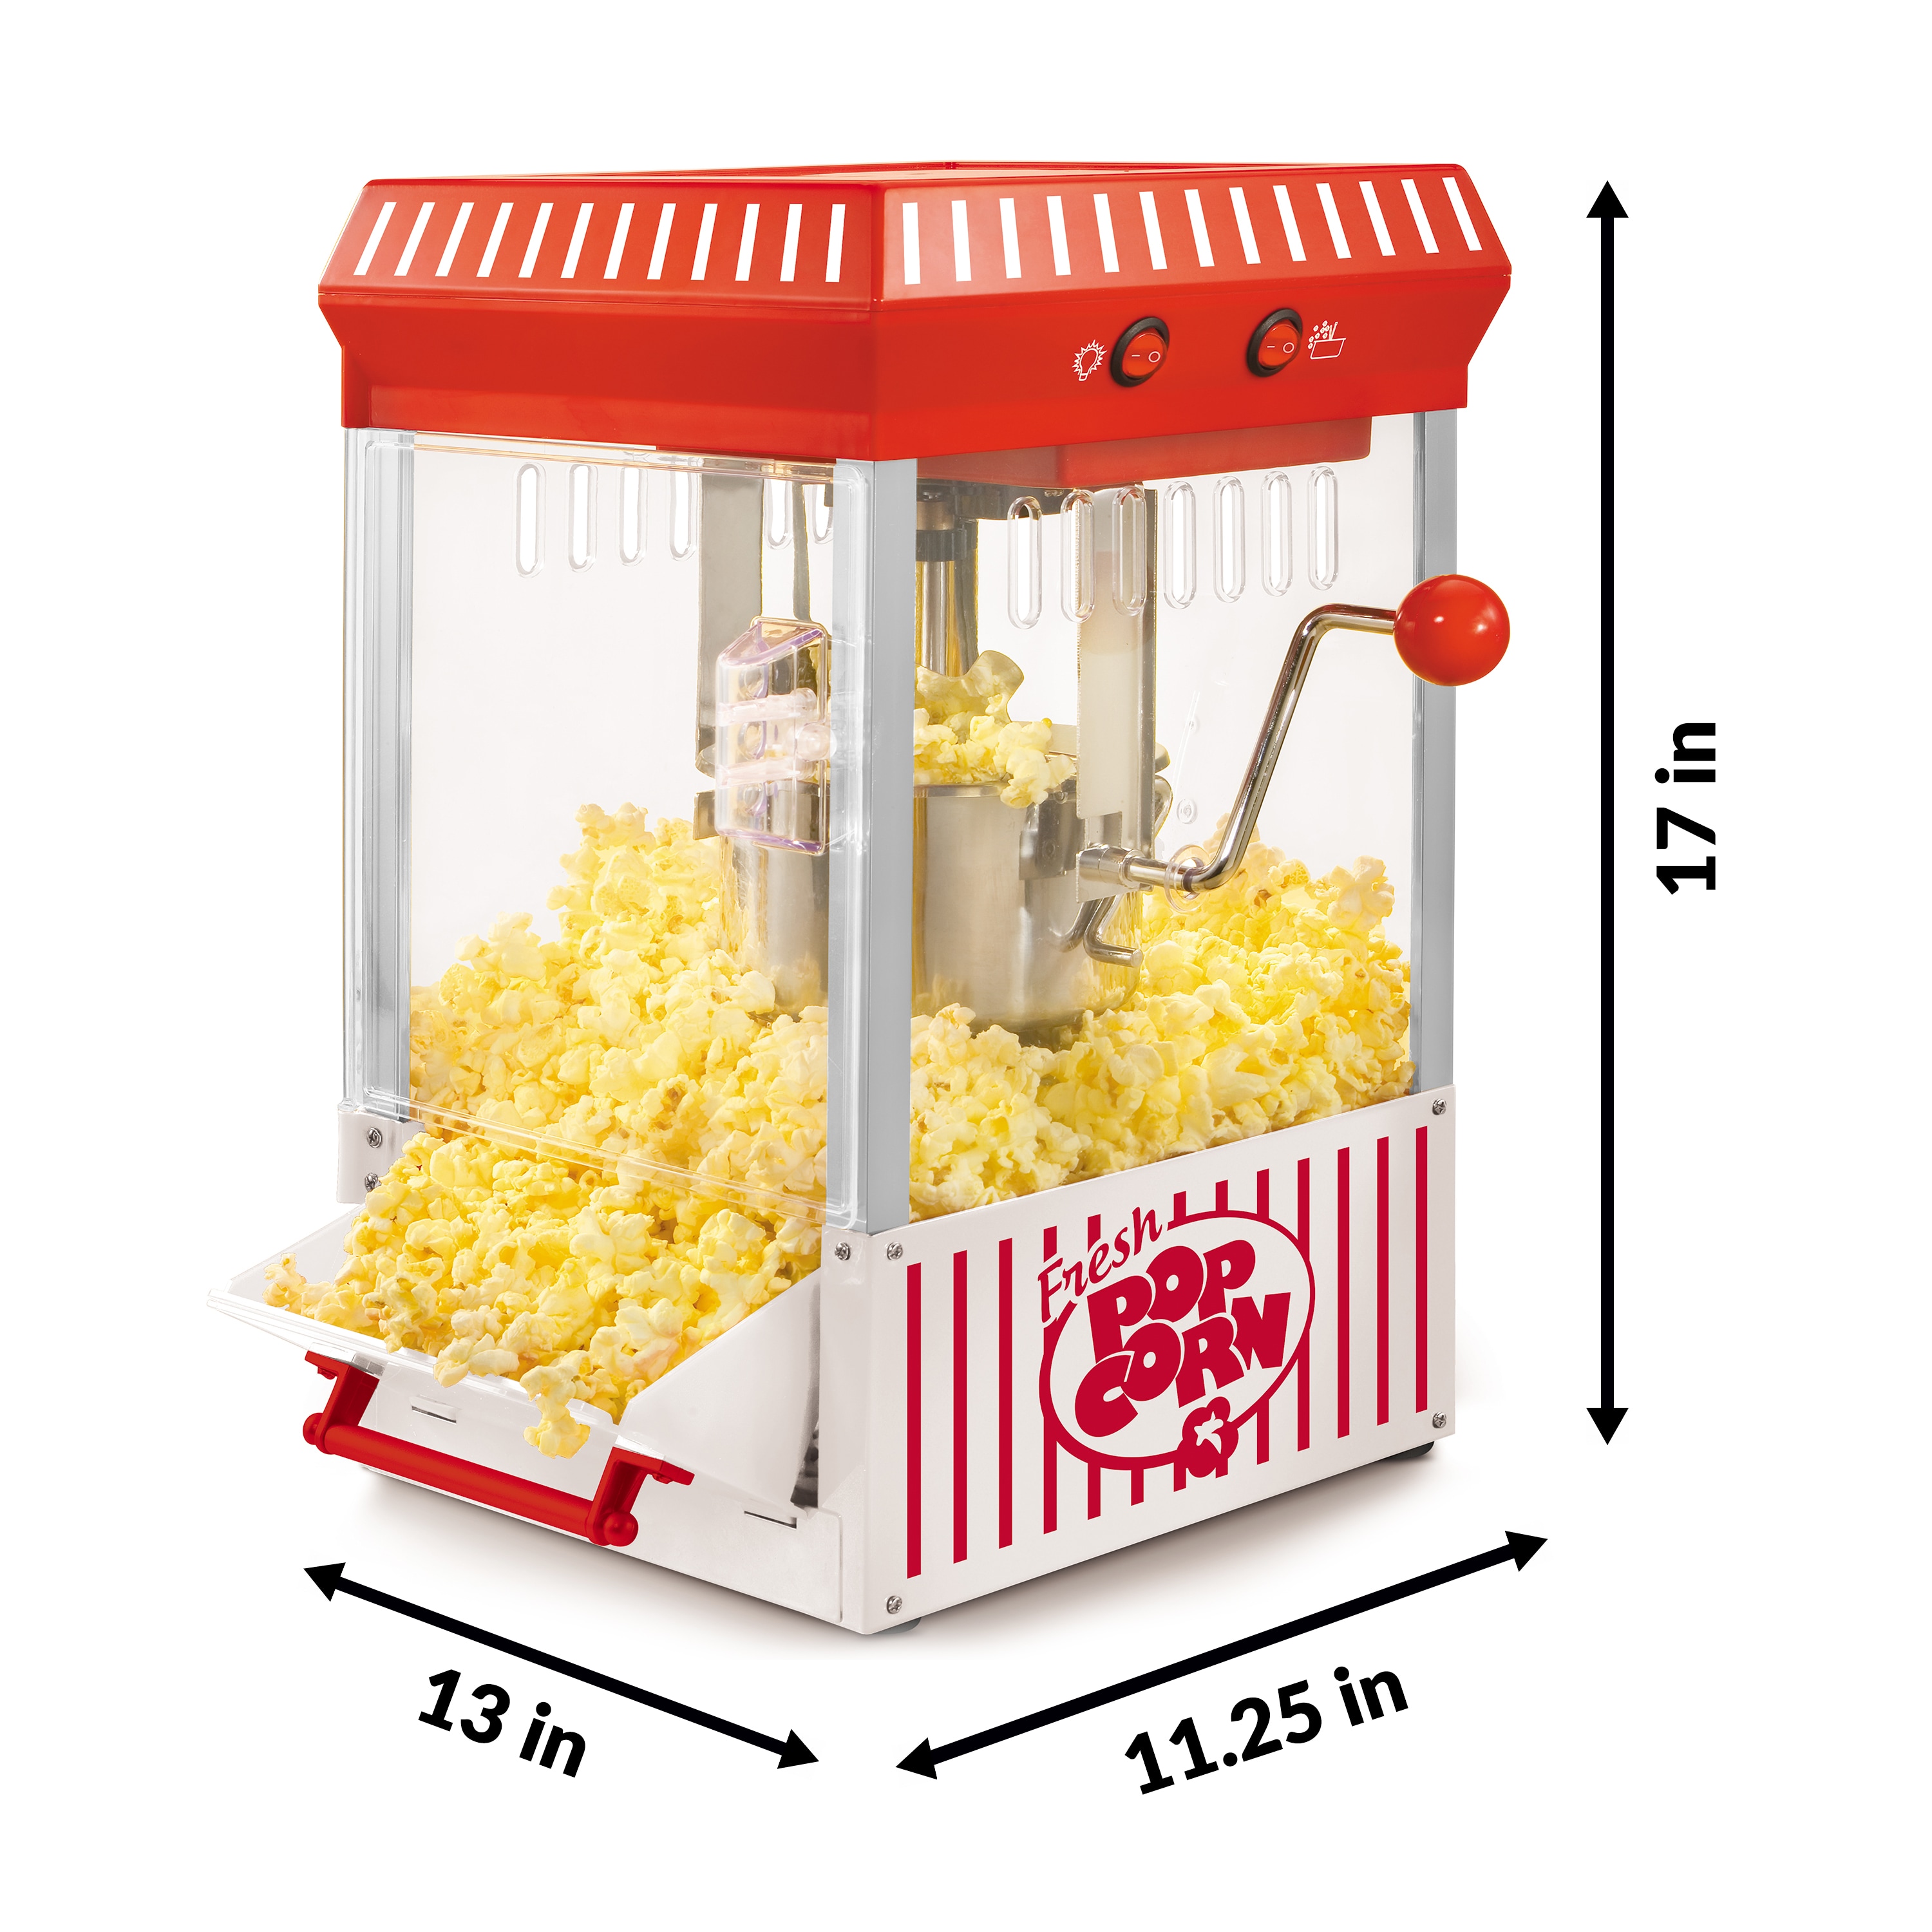 Nostalgia 6 QT Classic Retro Stirring Popcorn Maker 